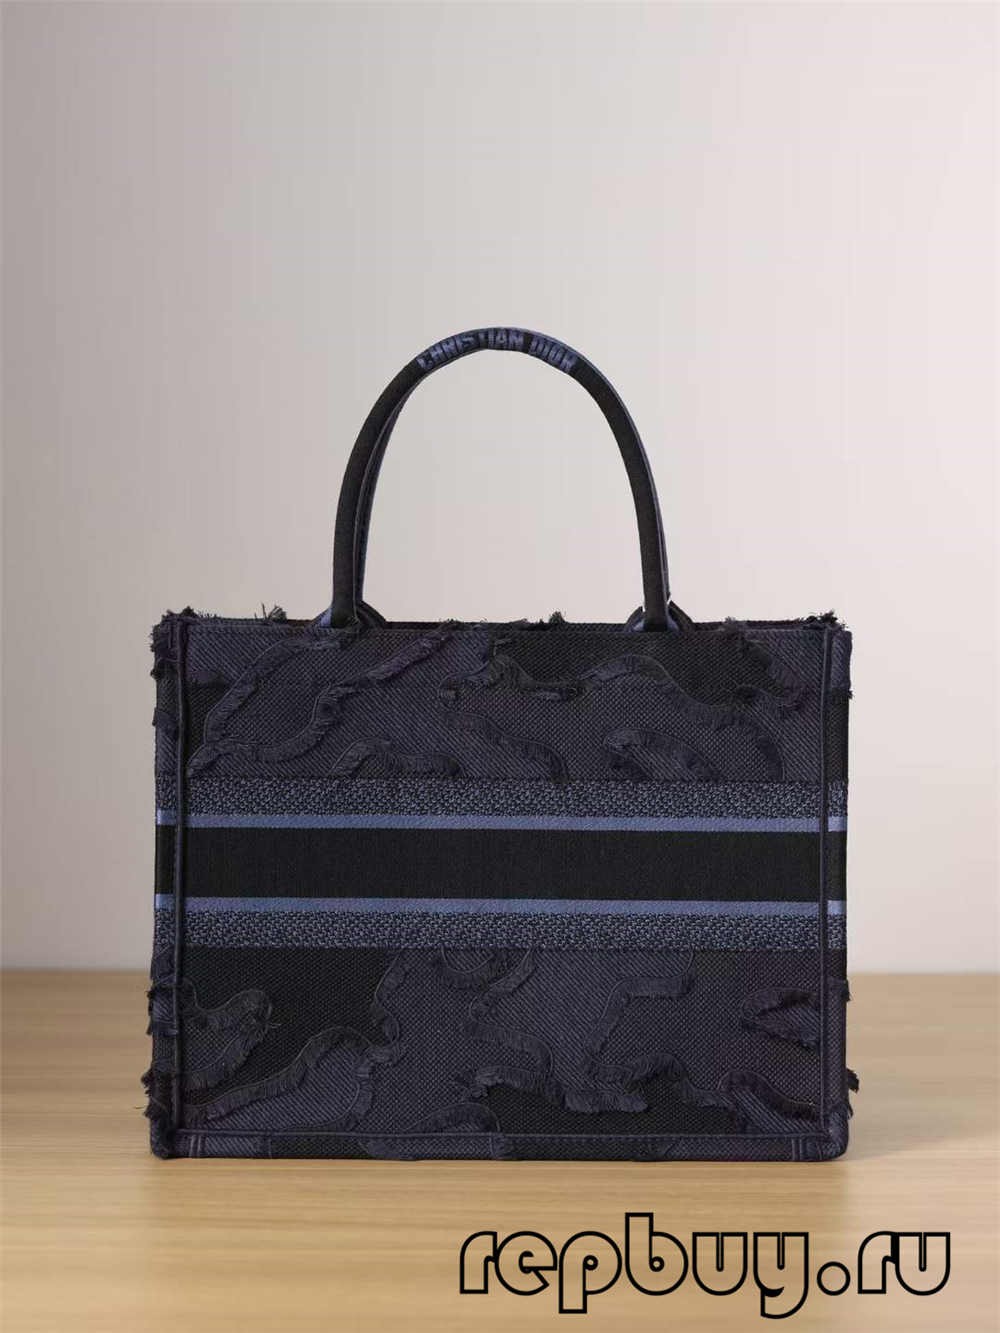 Las mejores réplicas de bolsos Dior Book Tote: bordado con estampado de borlas azules (2022 más reciente)-Tienda en línea de bolsos Louis Vuitton falsos de la mejor calidad, réplica de bolsos de diseño ru